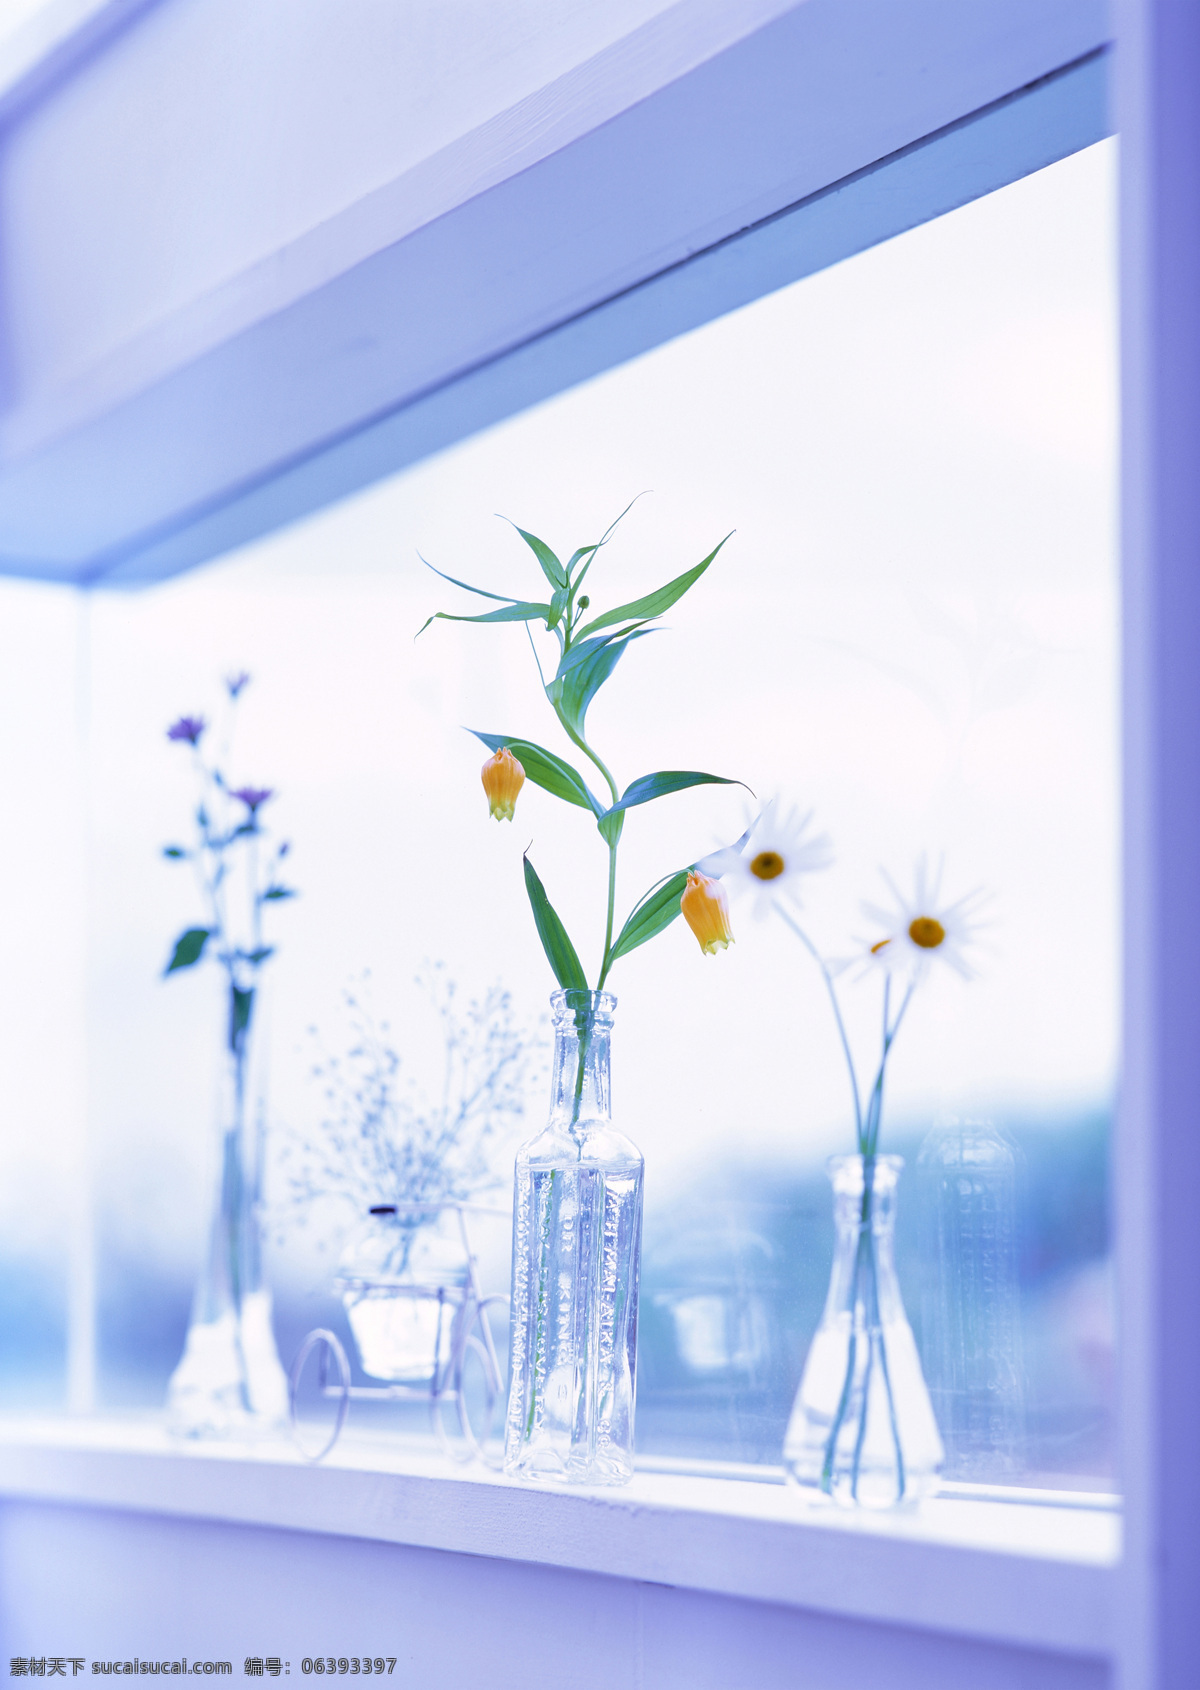 放在 窗台 上 鲜花 室内摄影 静物摄影 物品 安静 唯美 阳光 朦胧 水晶花瓶 雏菊 室内设计 环境家居